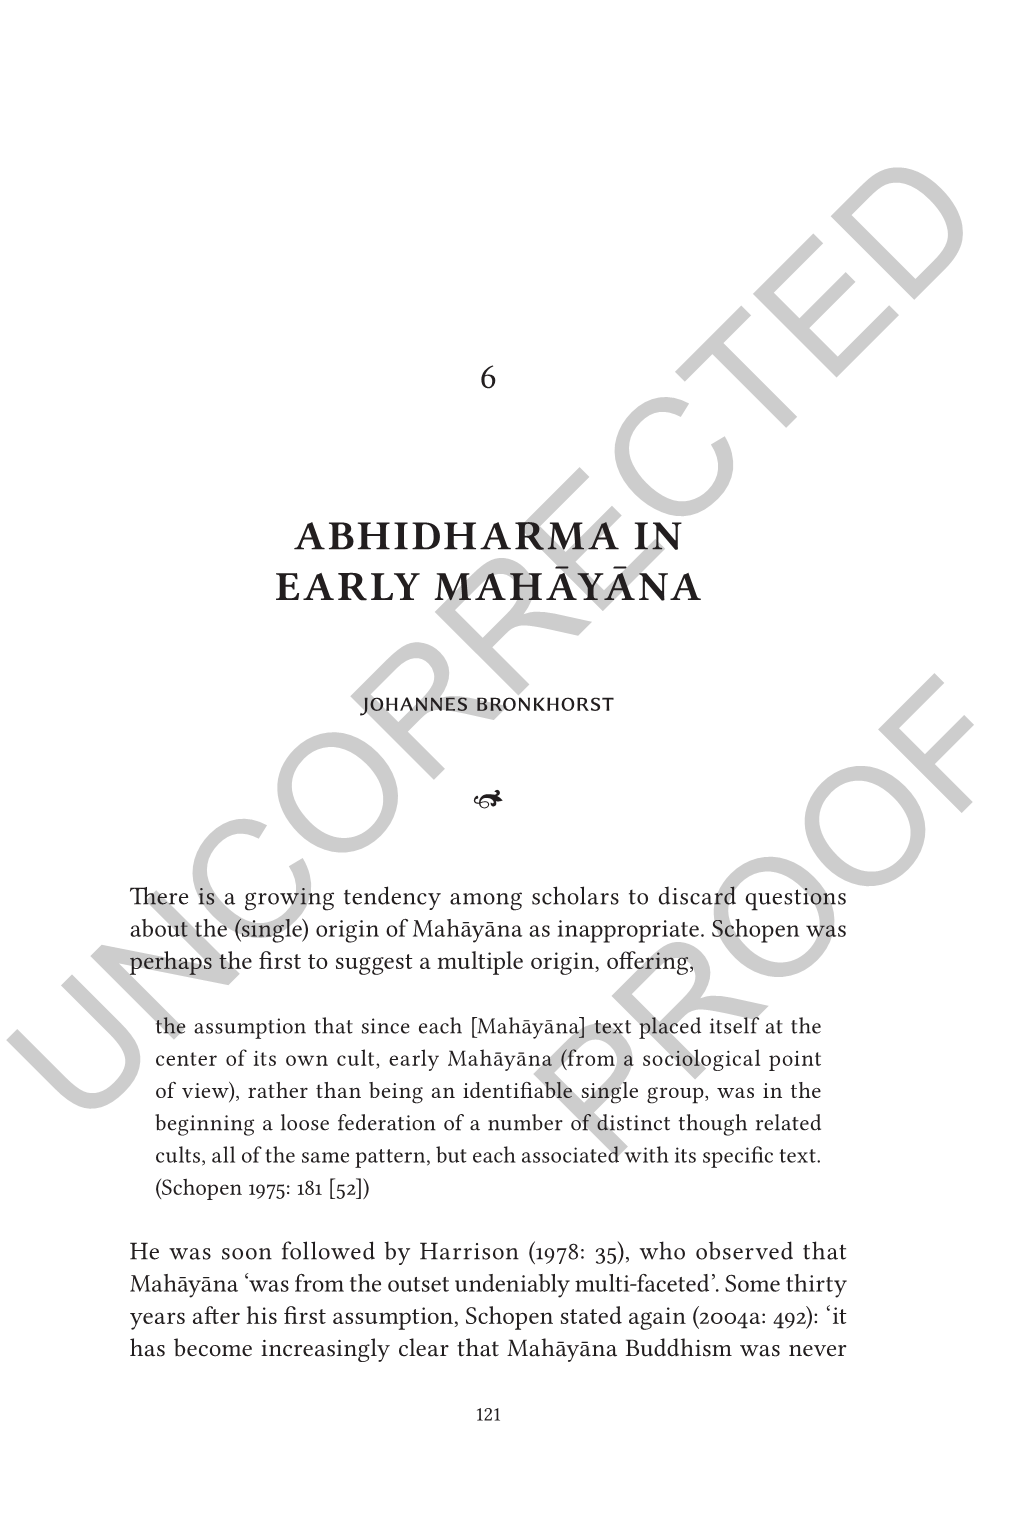 Abhidharma in Early Mahāyāna